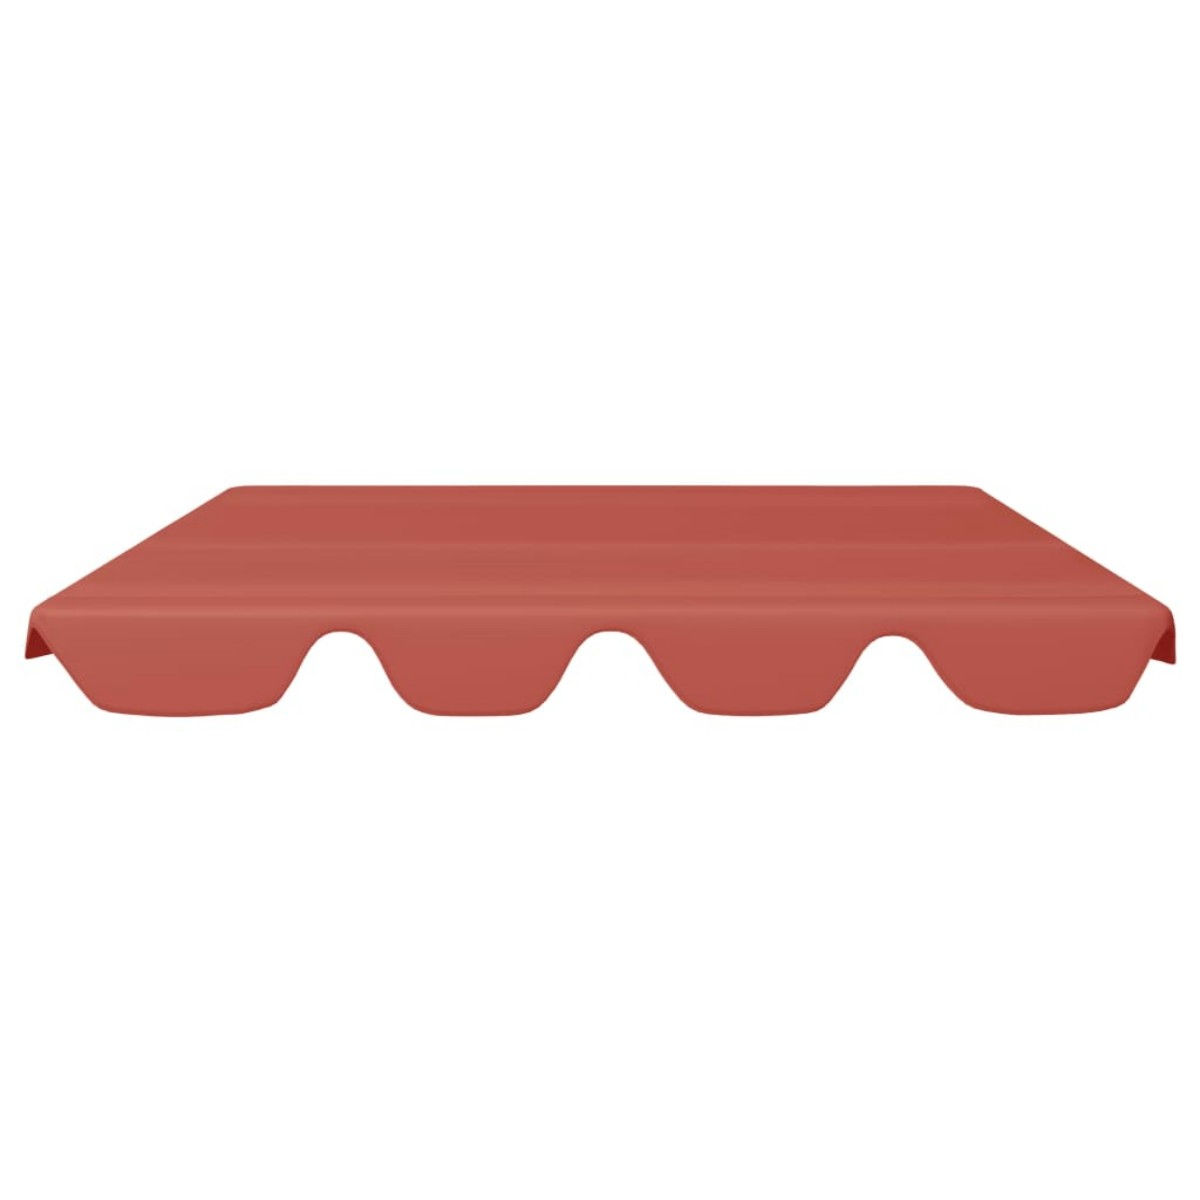 xl-312087 Hollywoodschaukel, Terracotta-Rot DOTMALL Ersatzdach für